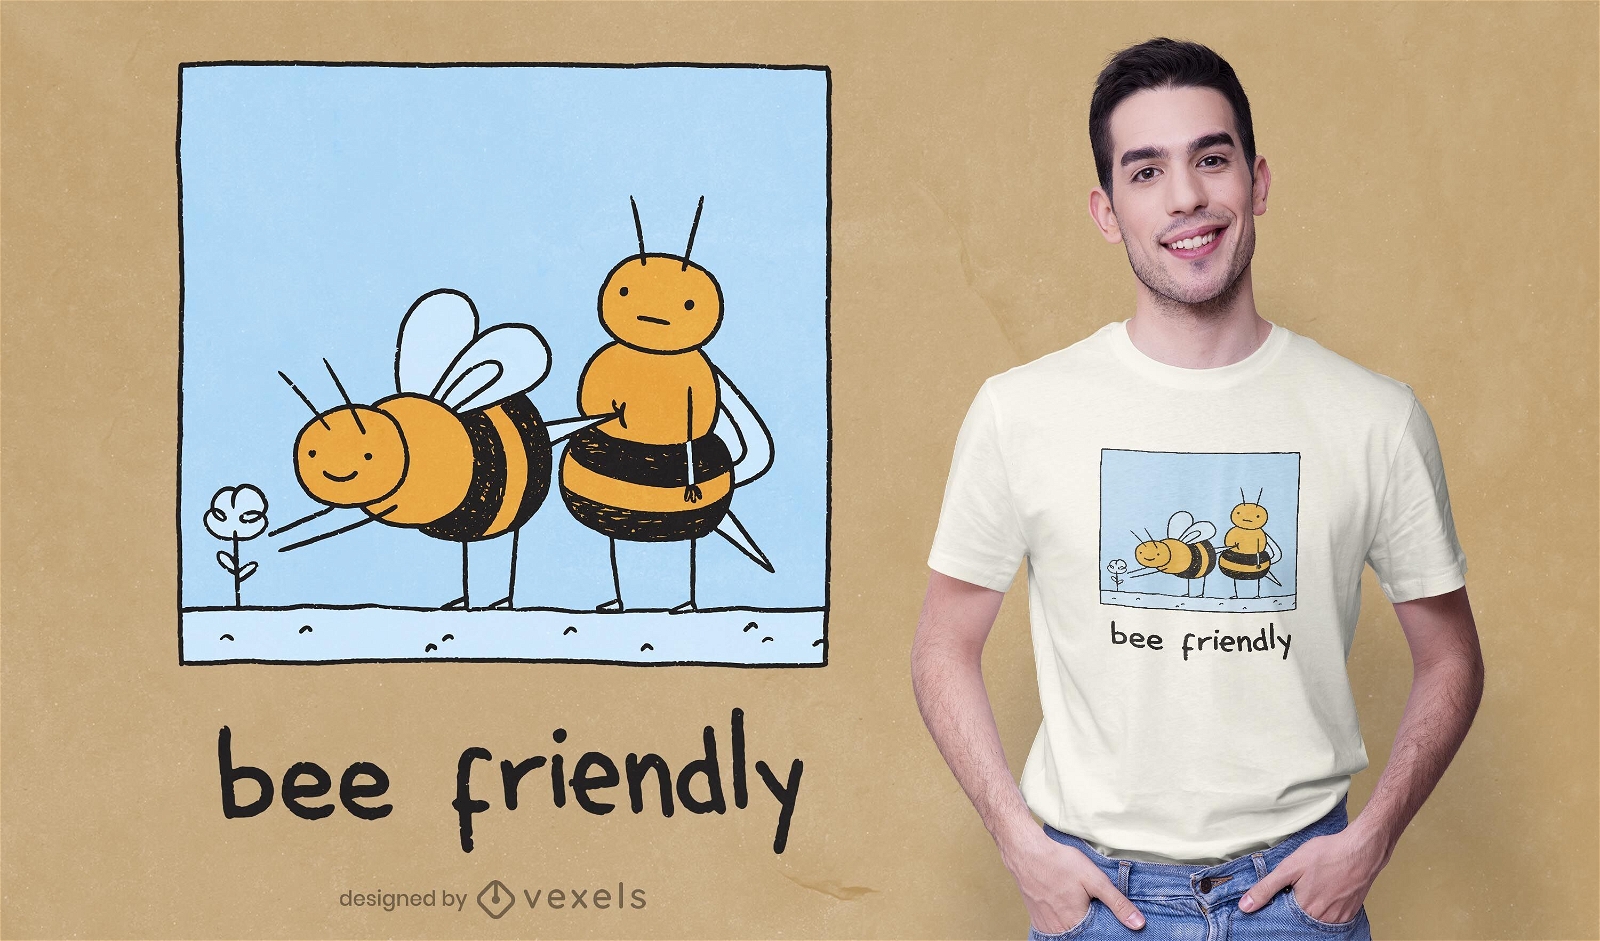 Bee friendly t-shirt design